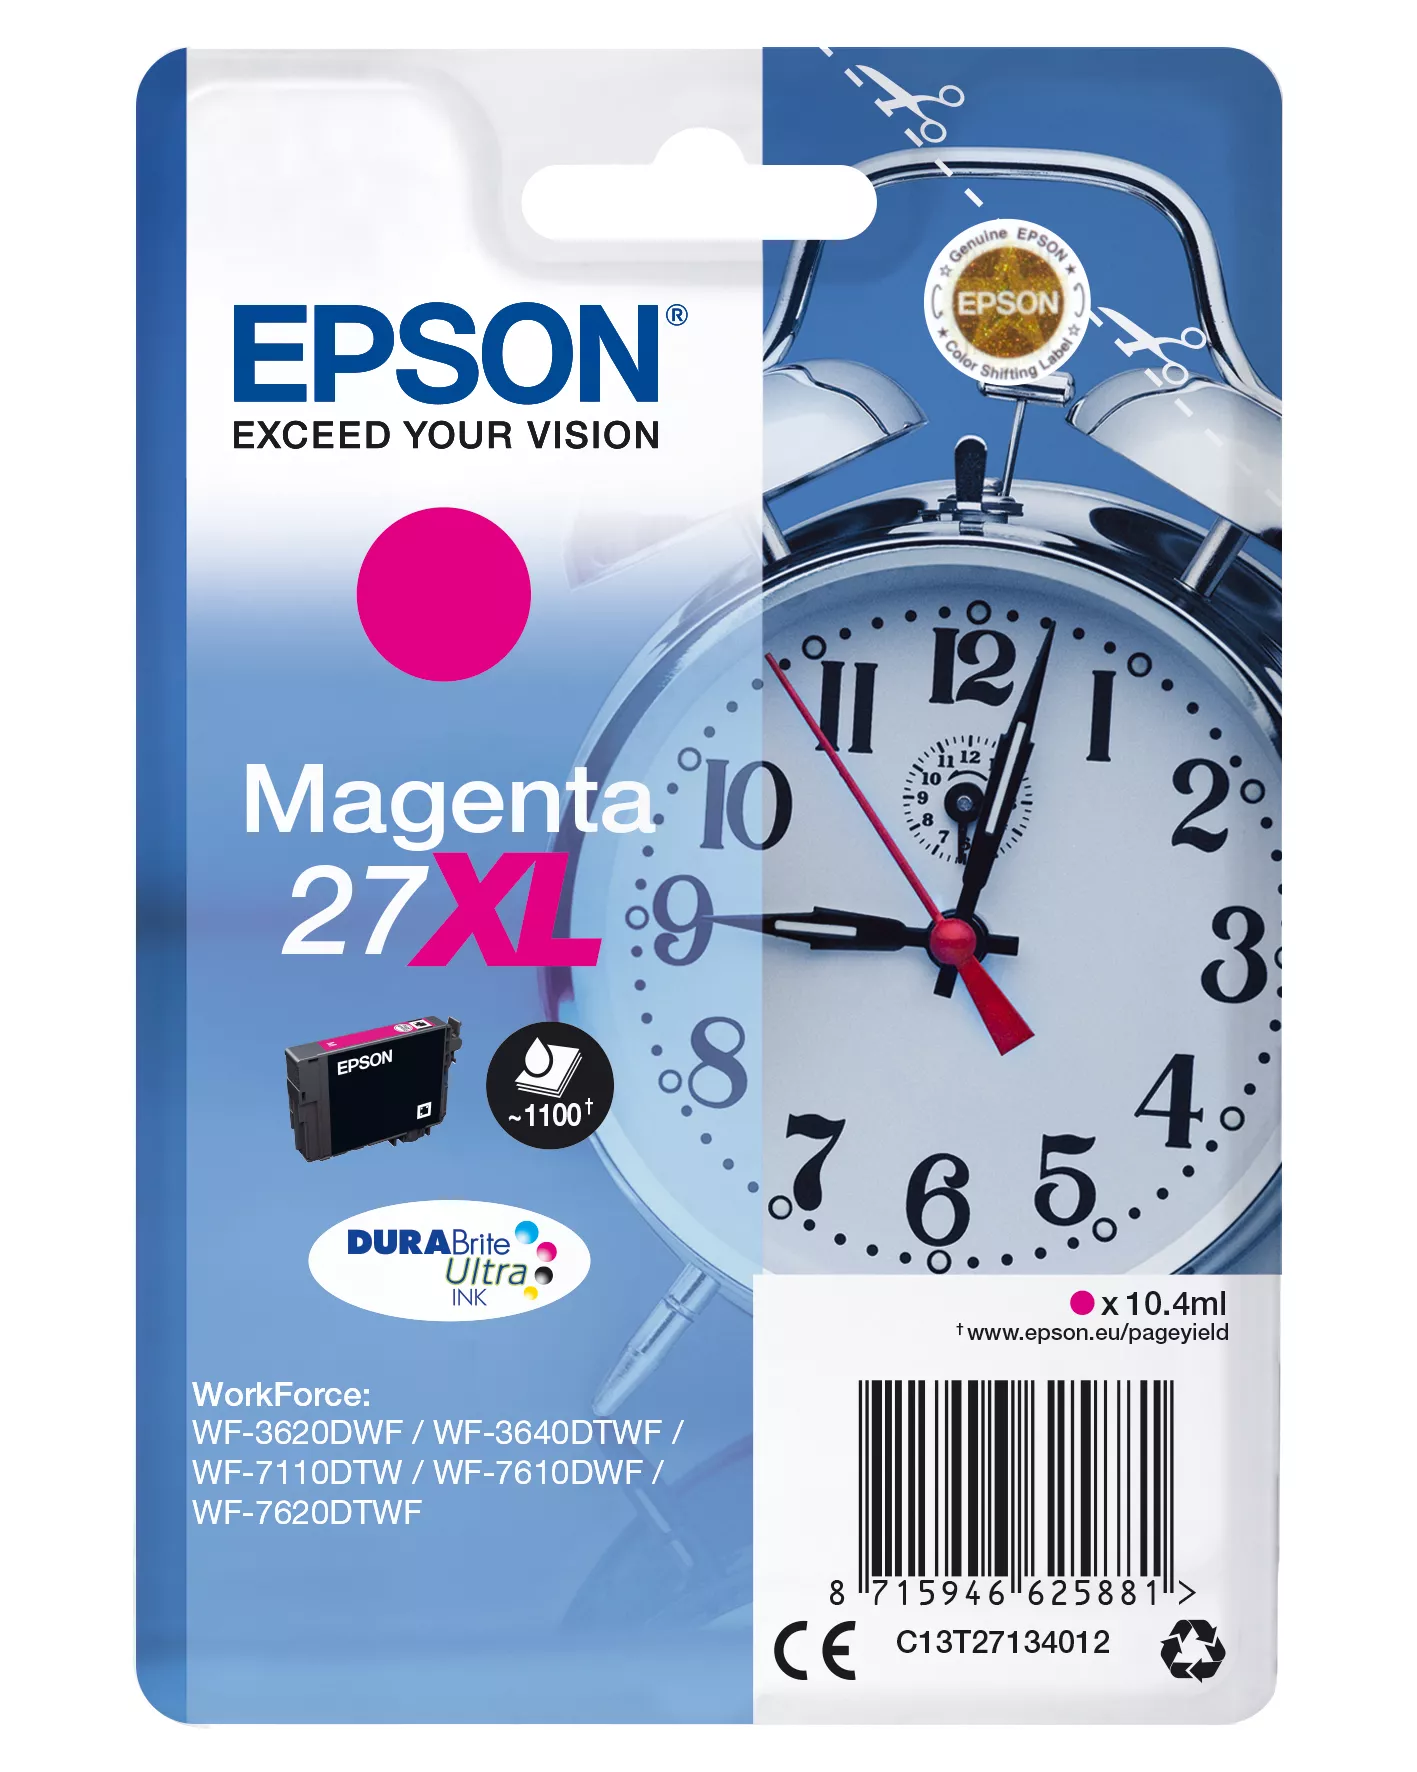 Vente EPSON 27XL cartouche d encre magenta haute capacité 10 au meilleur prix